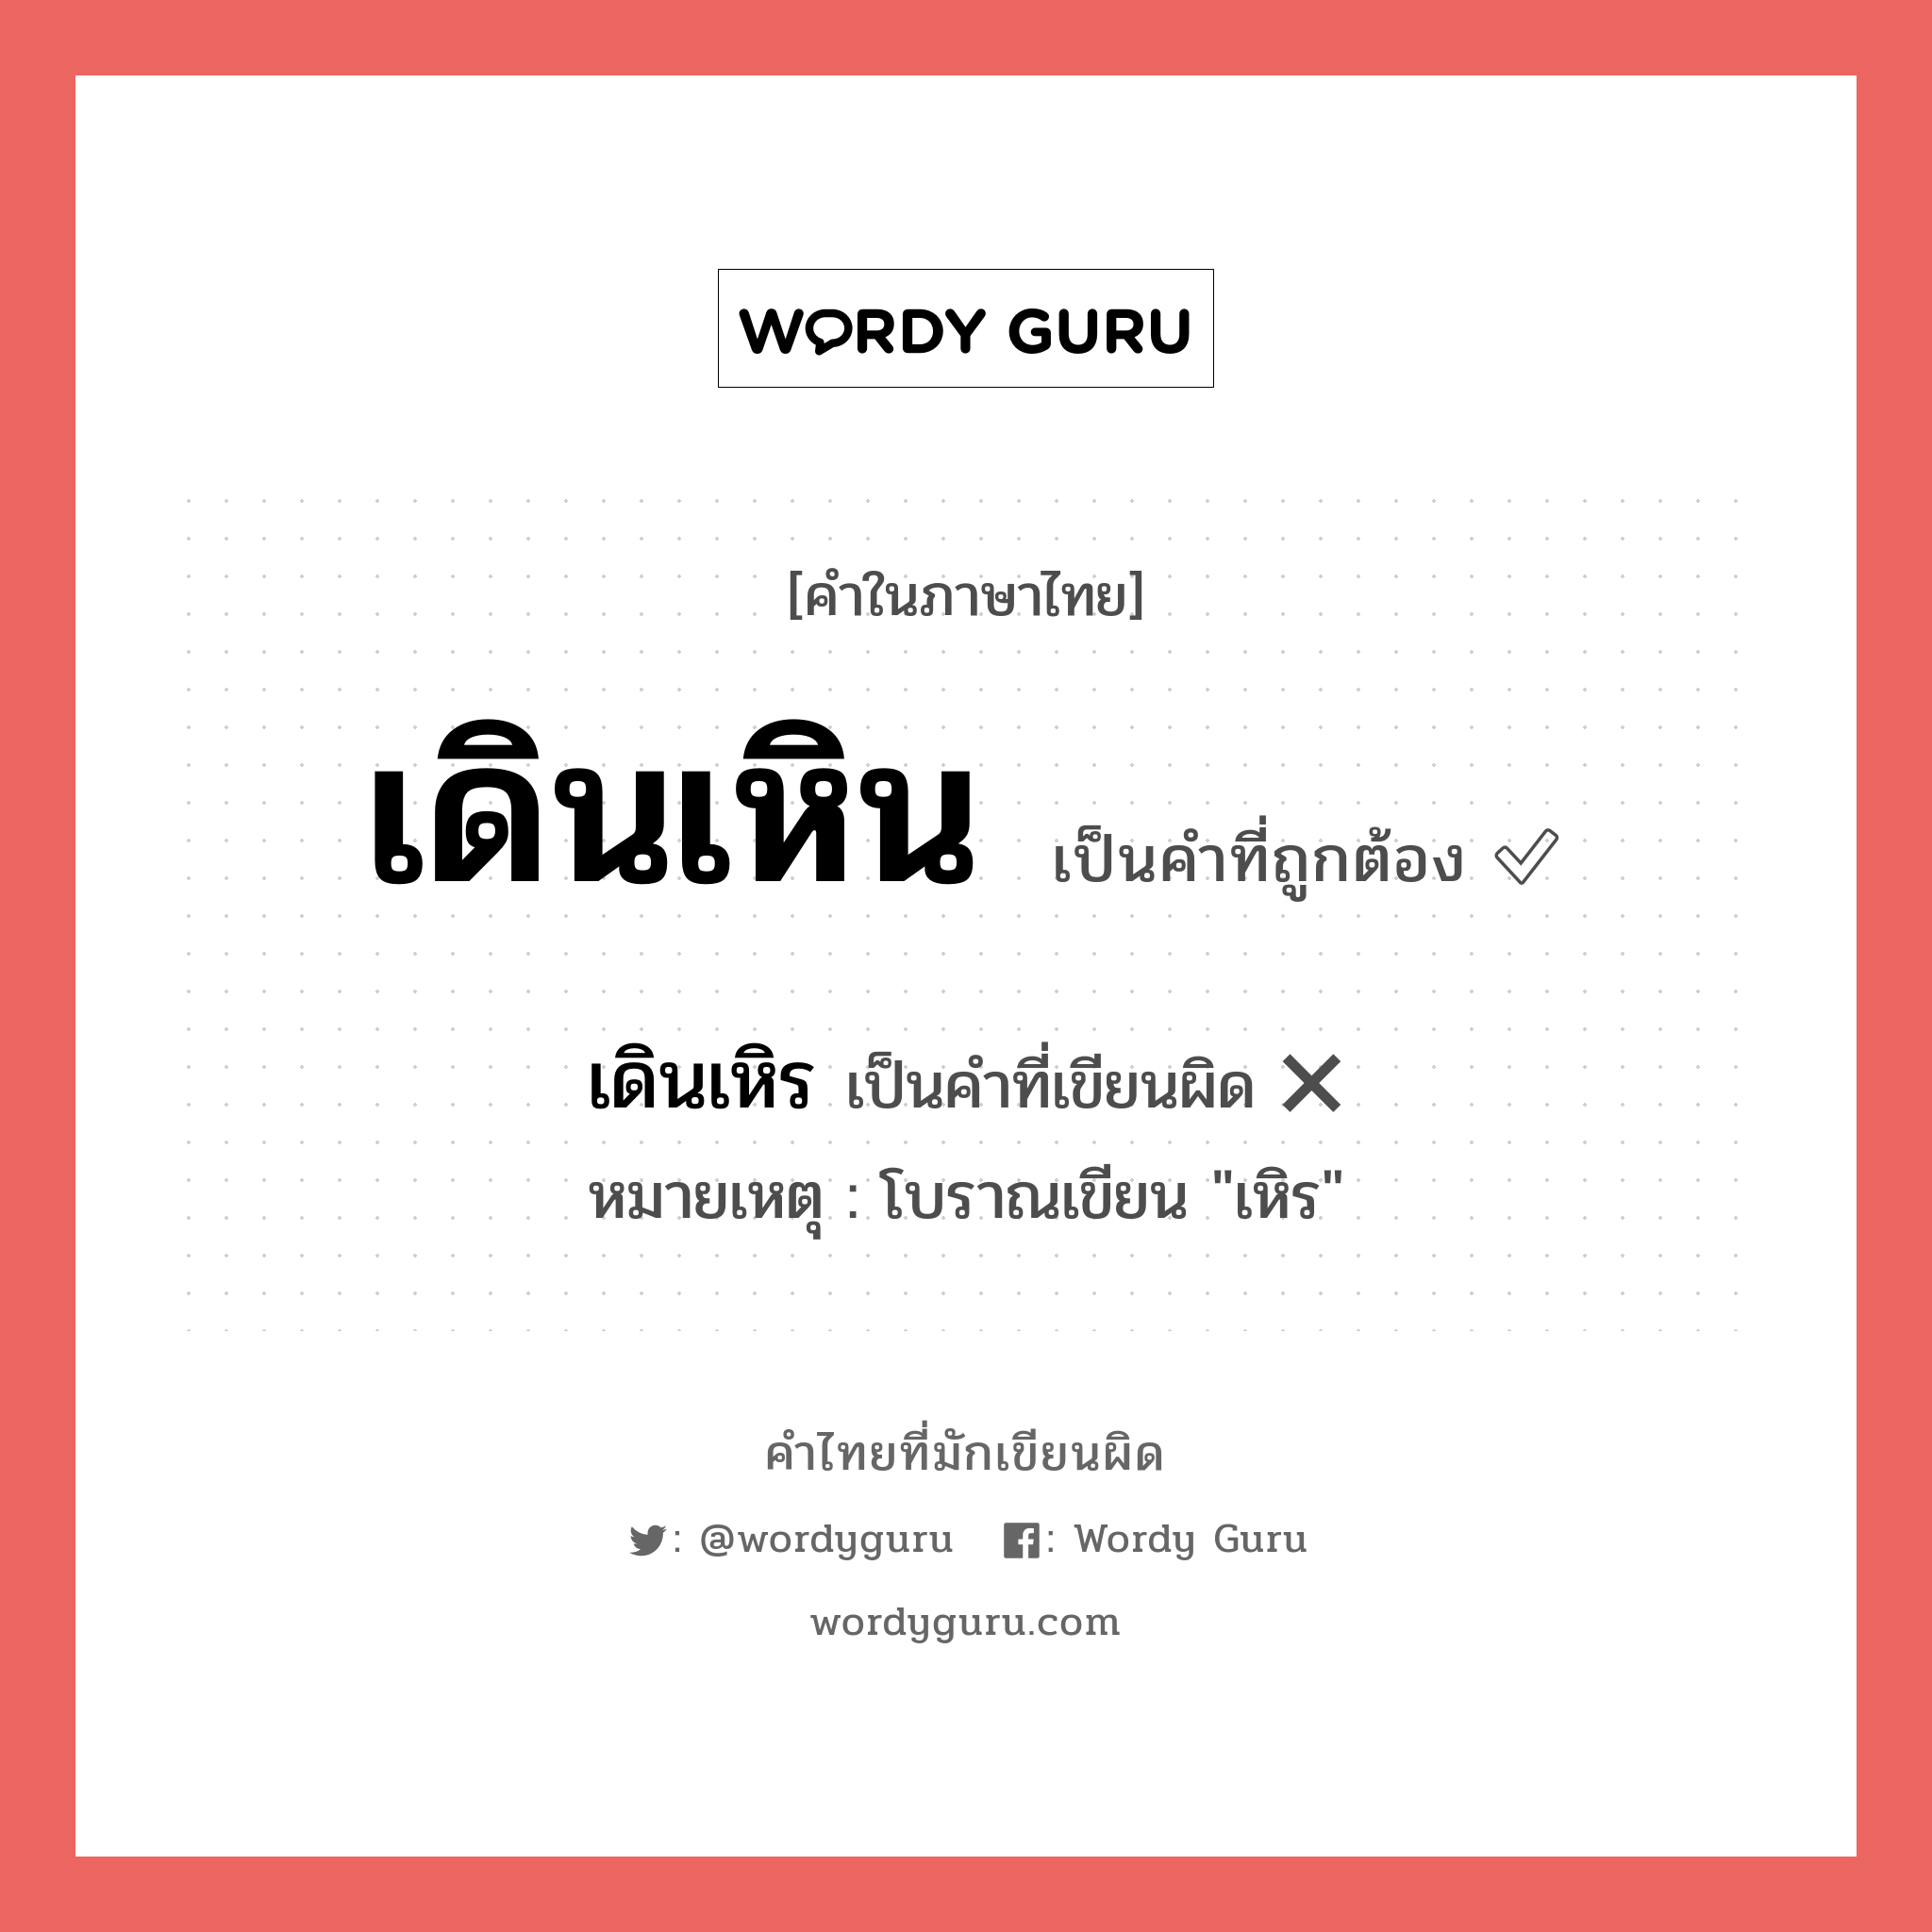 เดินเหิน หรือ เดินเหิร คำไหนเขียนถูก?, คำในภาษาไทยที่มักเขียนผิด เดินเหิน คำที่ผิด ❌ เดินเหิร หมายเหตุ โบราณเขียน "เหิร"